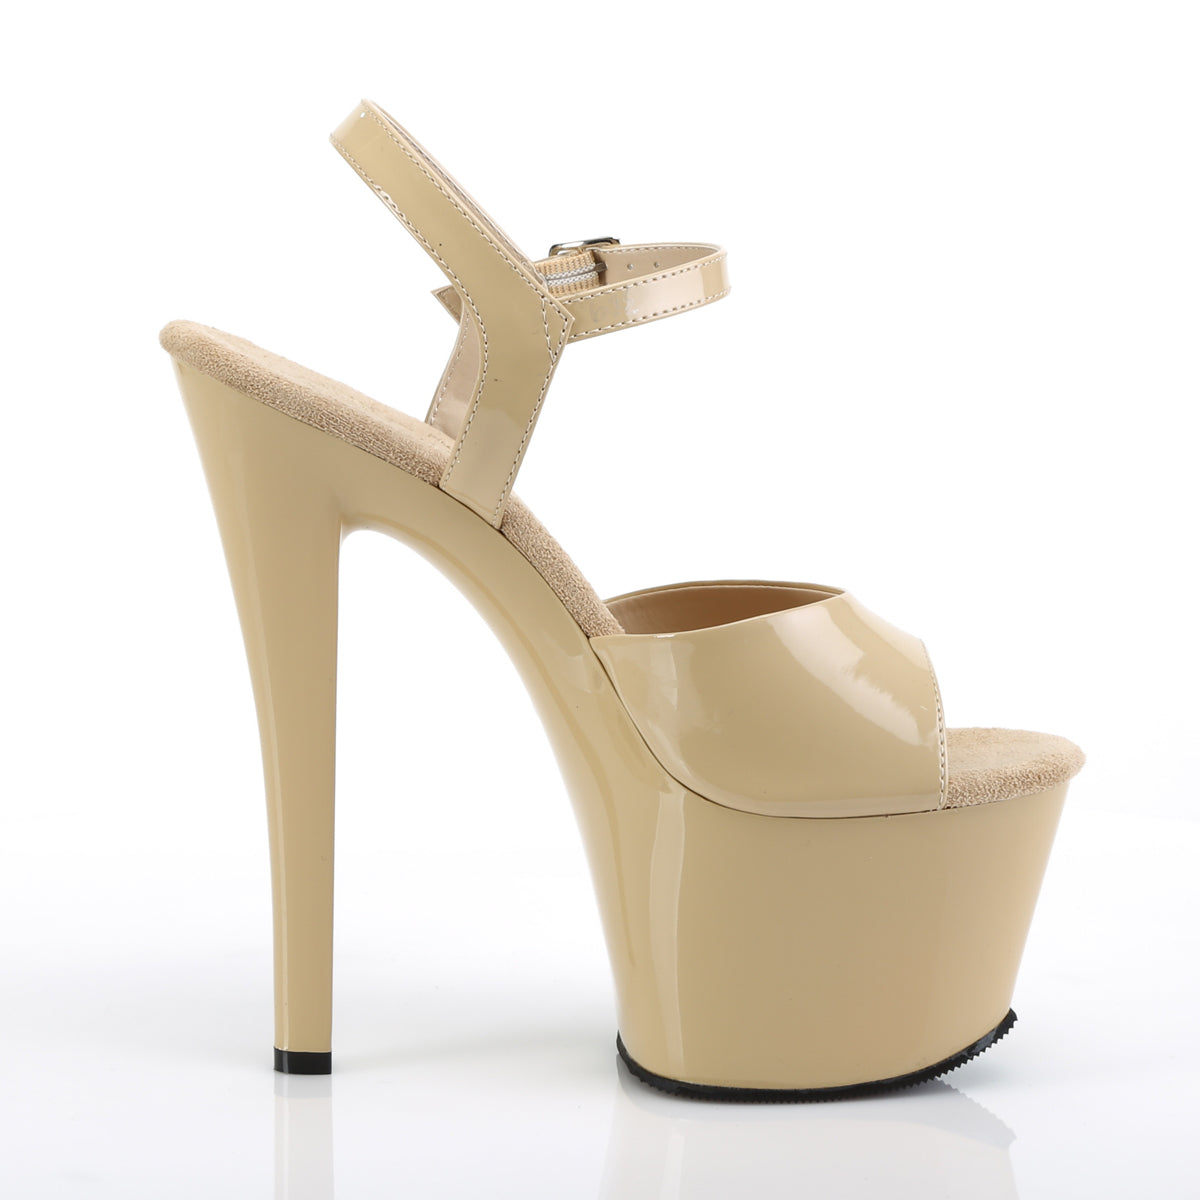 SKY-309 Pleaser 7" Heel Cream Patent Pole Dancing Platforms-Pleaser- Sexy Shoes Fetish Heels